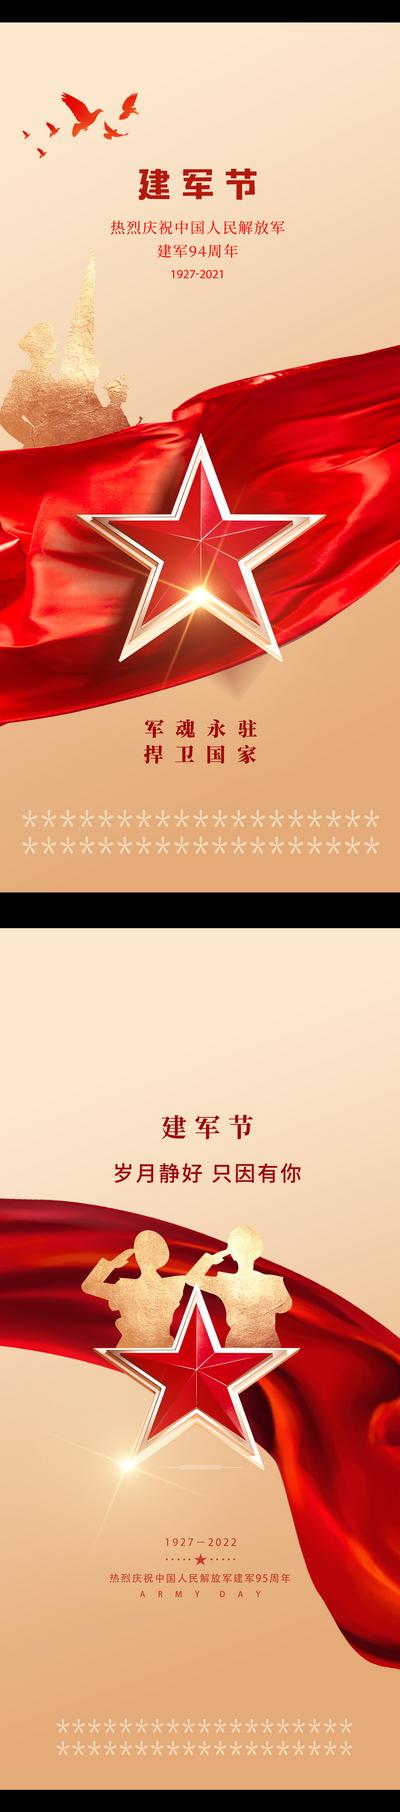 南门网 海报 房地产 公历节日 81 八一 建军节 红绸布 军人 剪影 五角星 金色